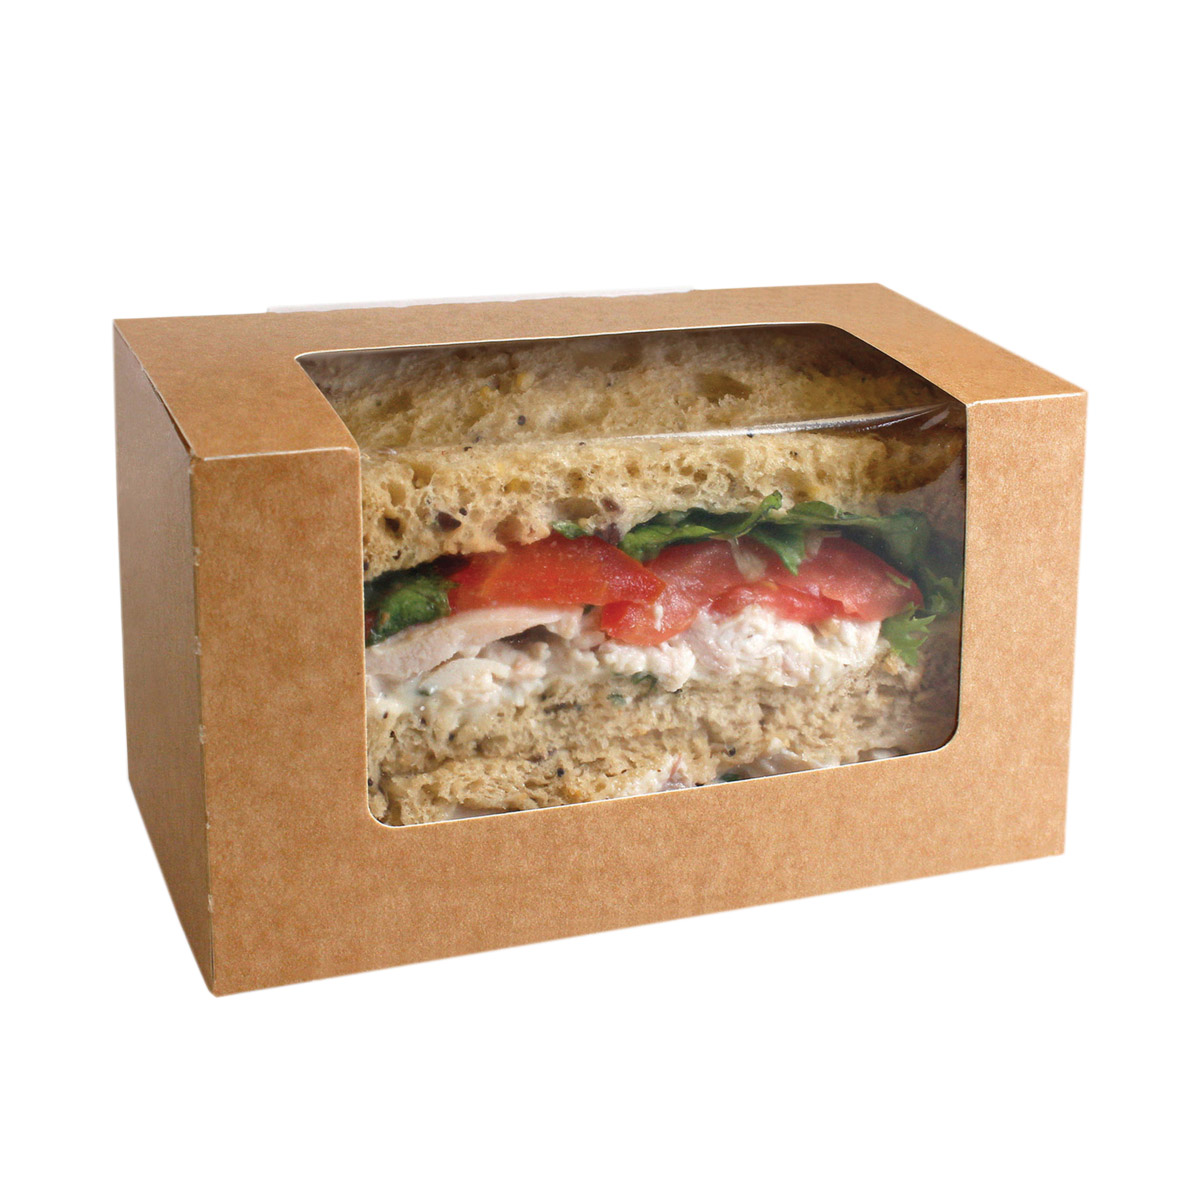 DayFresh Sandwich Bloomer Box Kraft